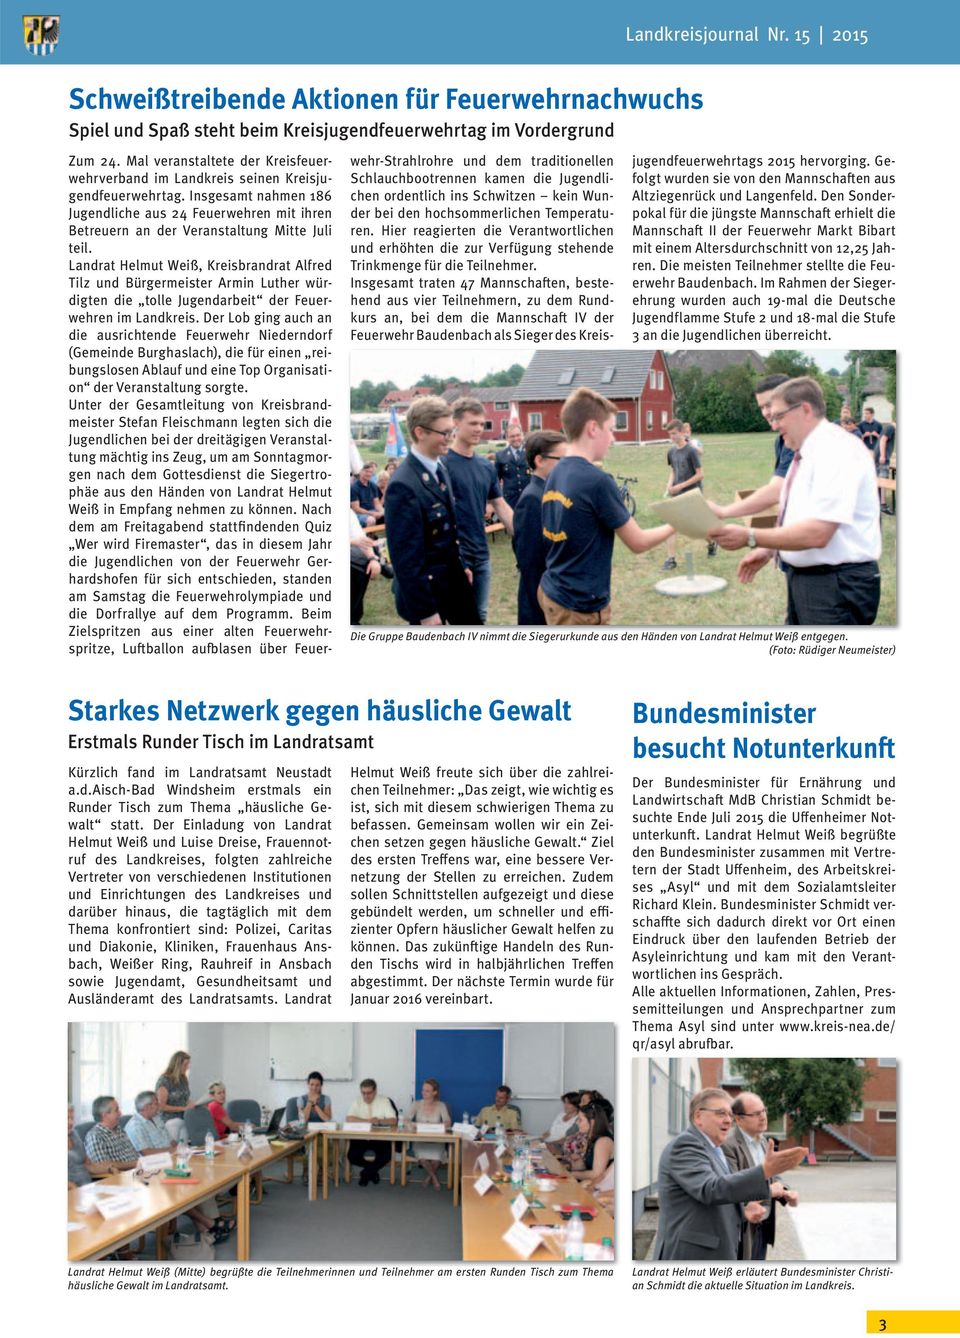 Landrat Helmut Weiß, Kreisbrandrat Alfred Tilz und Bürgermeister Armin Luther würdigten die tolle Jugendarbeit der Feuerwehren im Landkreis.